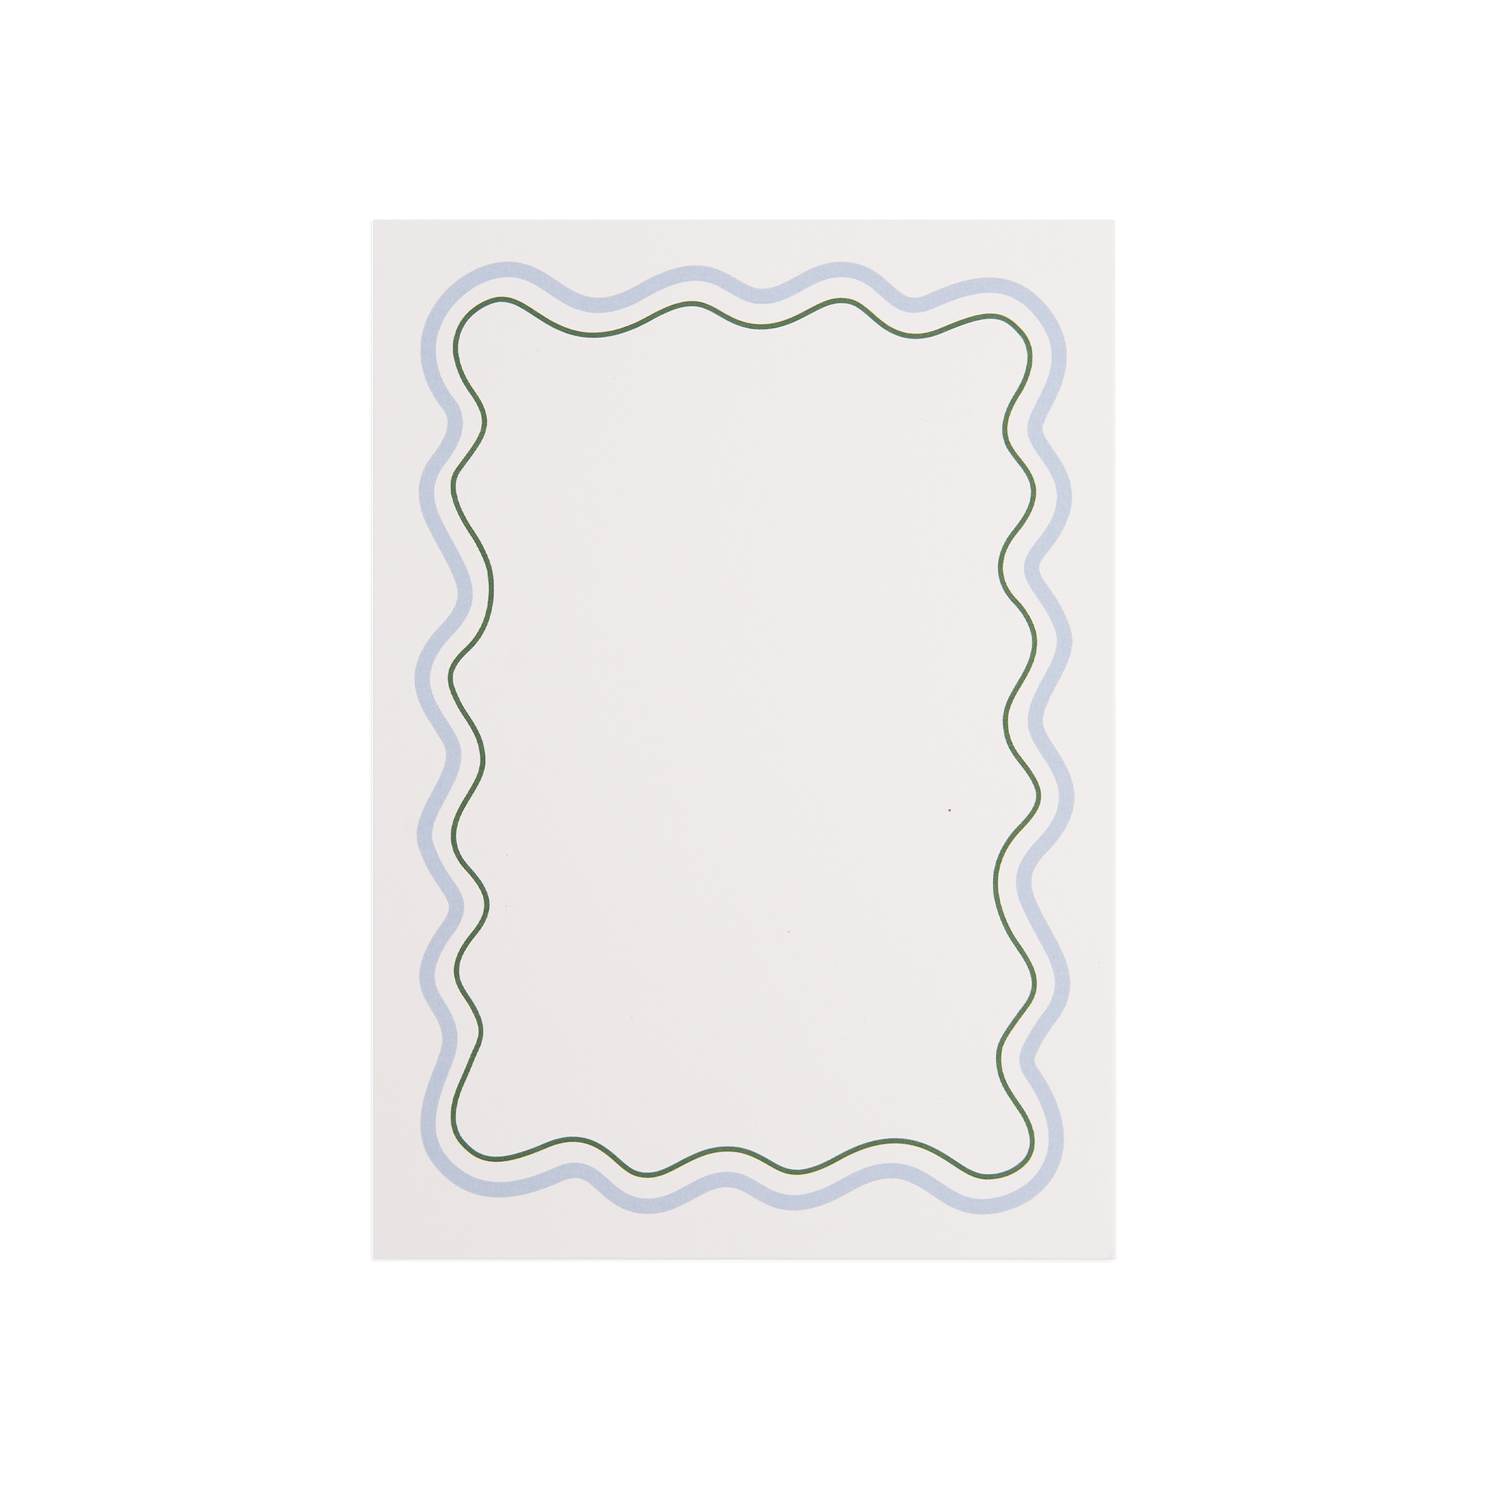 Scallop menykort - Blå 14,85x21 cm